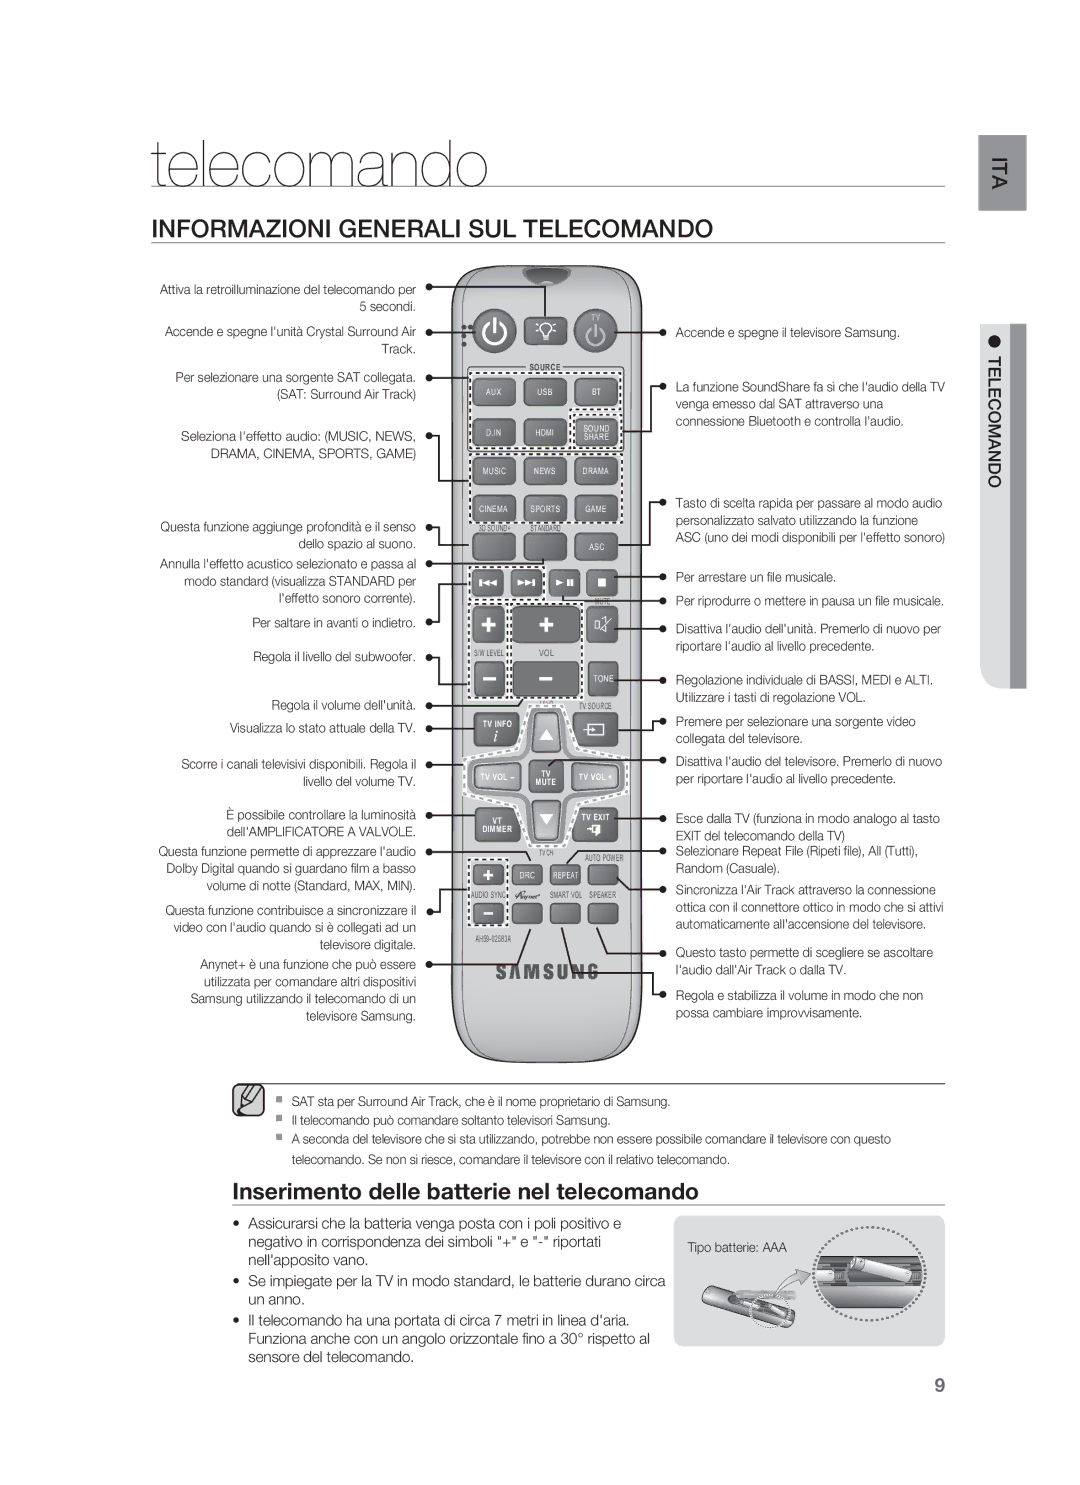 Samsung HW-F850/ZF manual Informazioni Generali SUL Telecomando, Inserimento delle batterie nel telecomando 